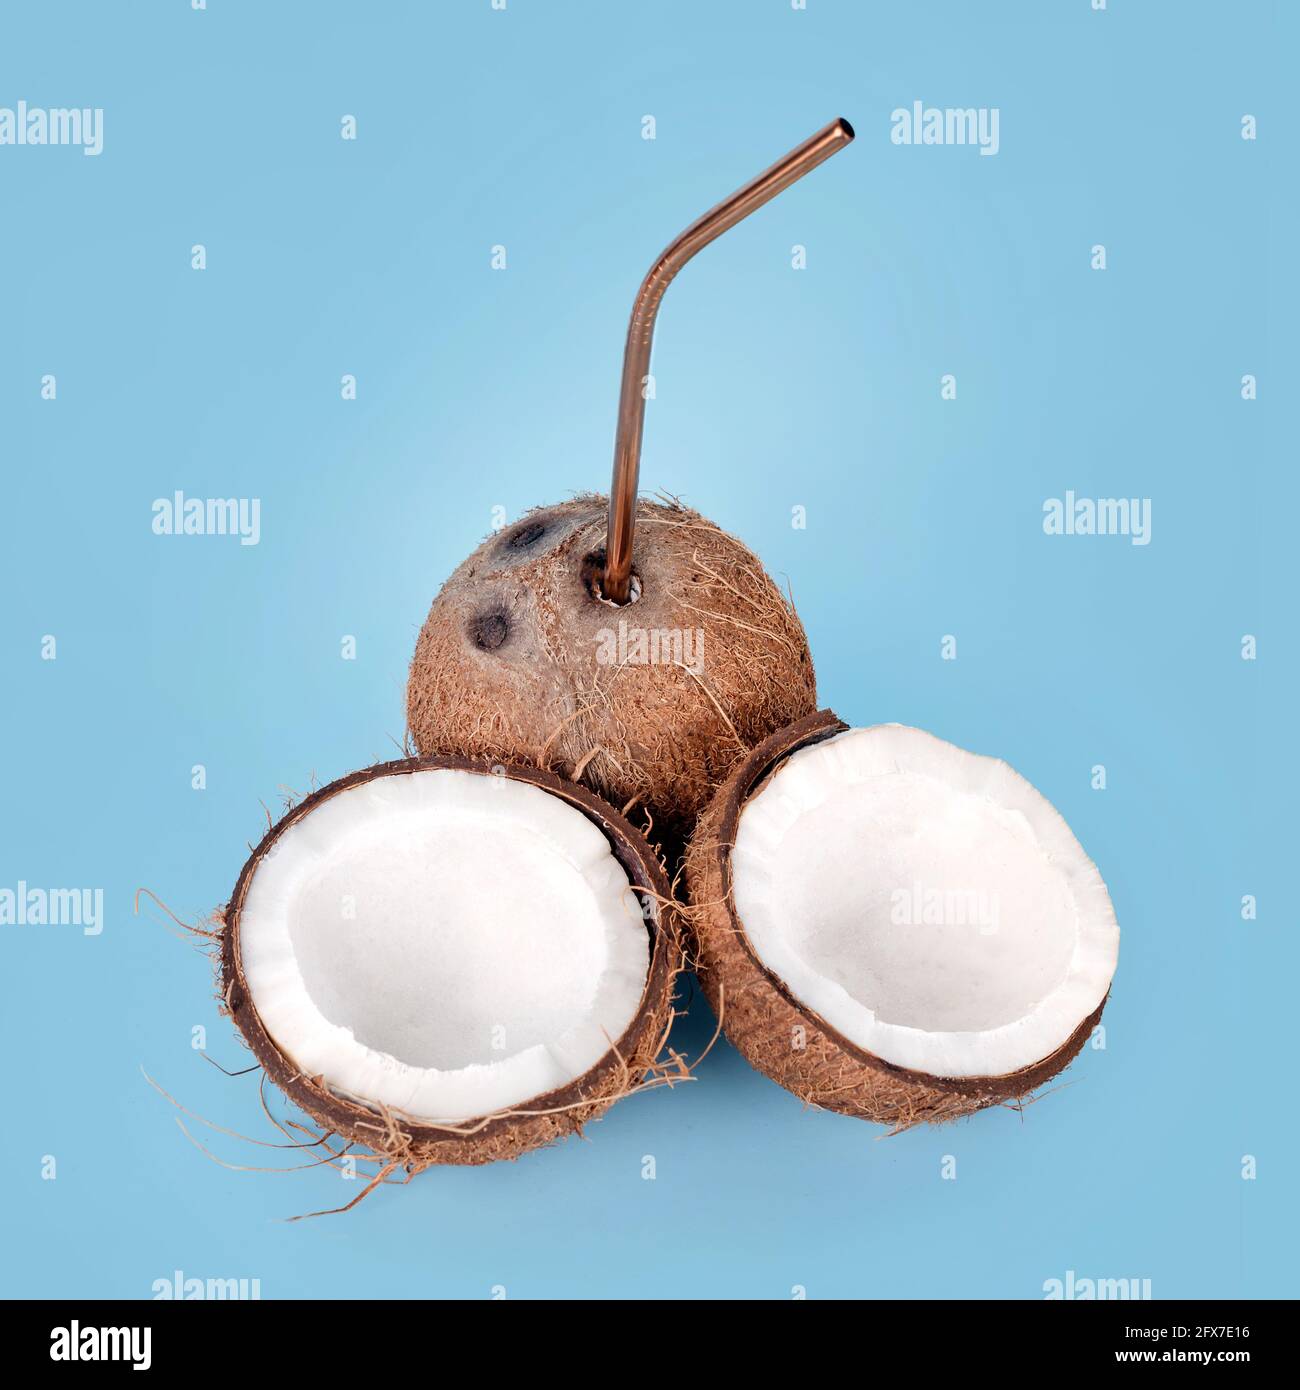 Aprire il cocco con la paglia su sfondo blu. Bevanda tropicale, vacanza estiva concetto creativo minimo. Frutta di cocco croccata con latte di cocco all'interno. Foto Stock